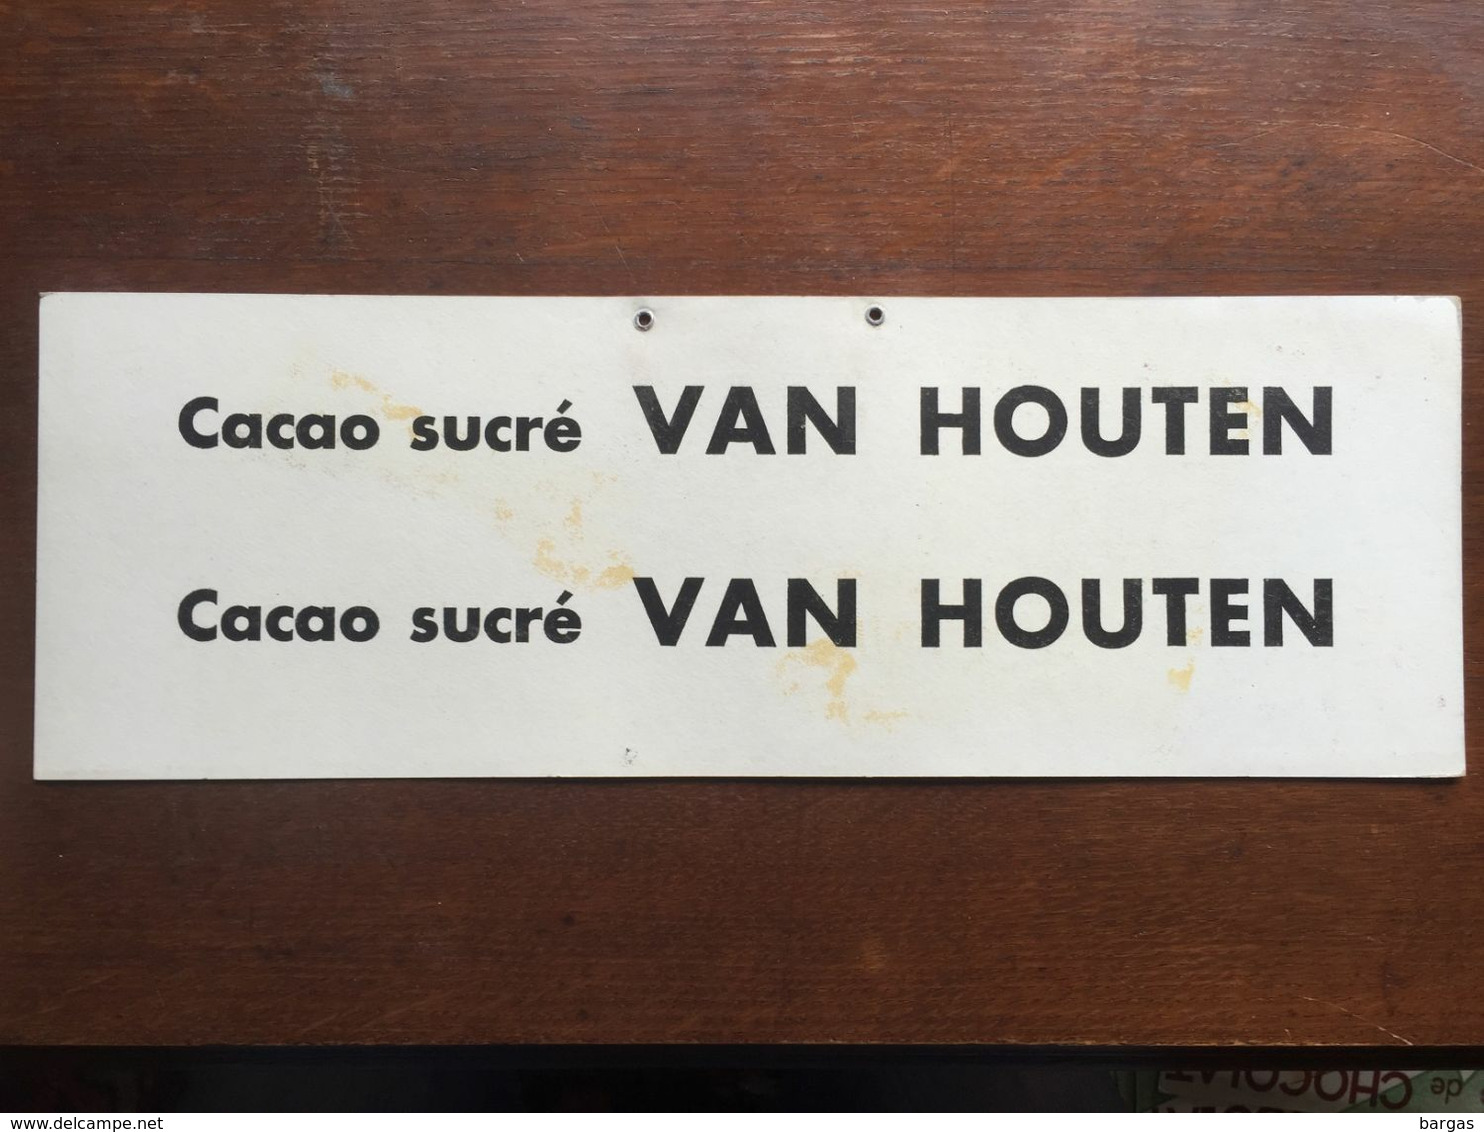 Carton Publicitaire à Suspendre Cacao Chocolat Van Houten - Poster & Plakate